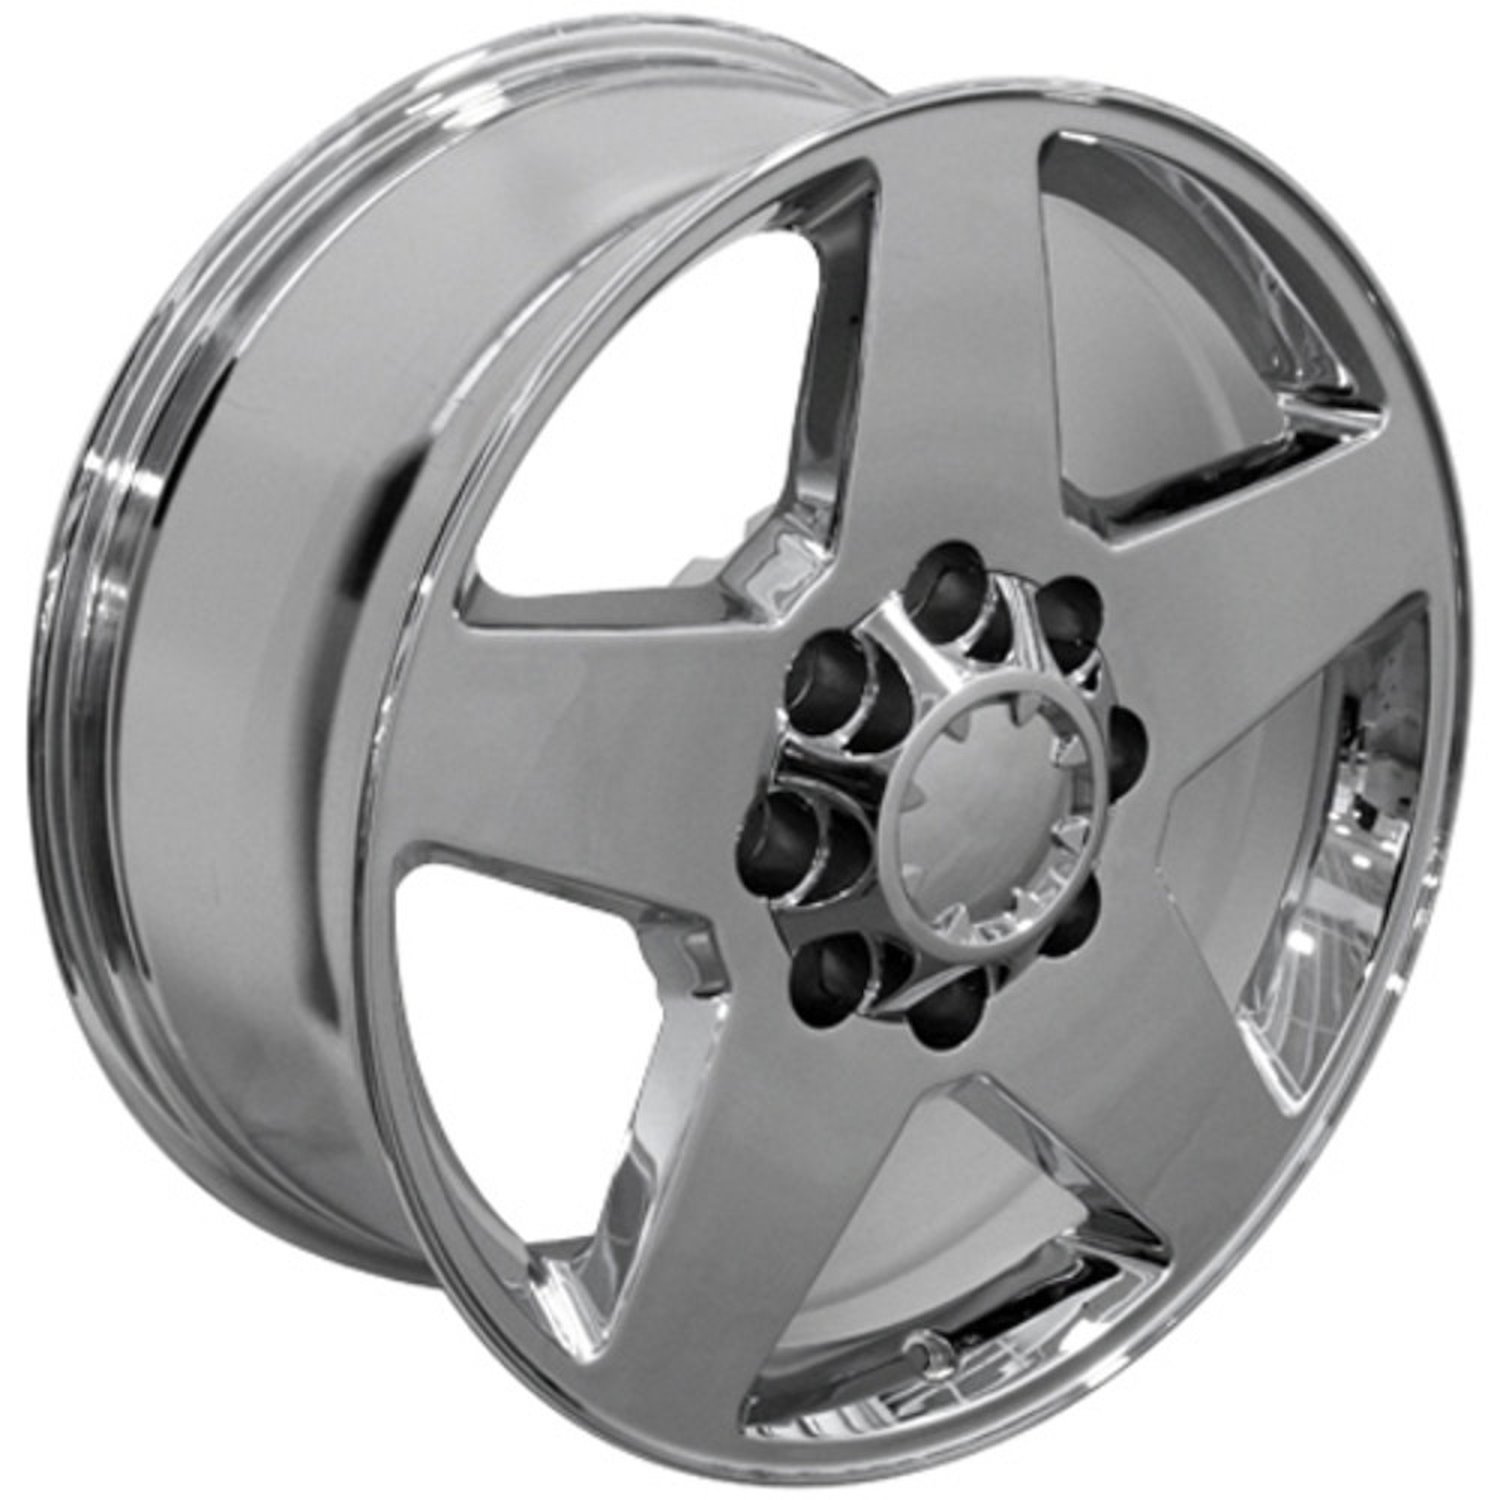 Five Spoke Silverado Style Wheel Size: 20" x 8.5"